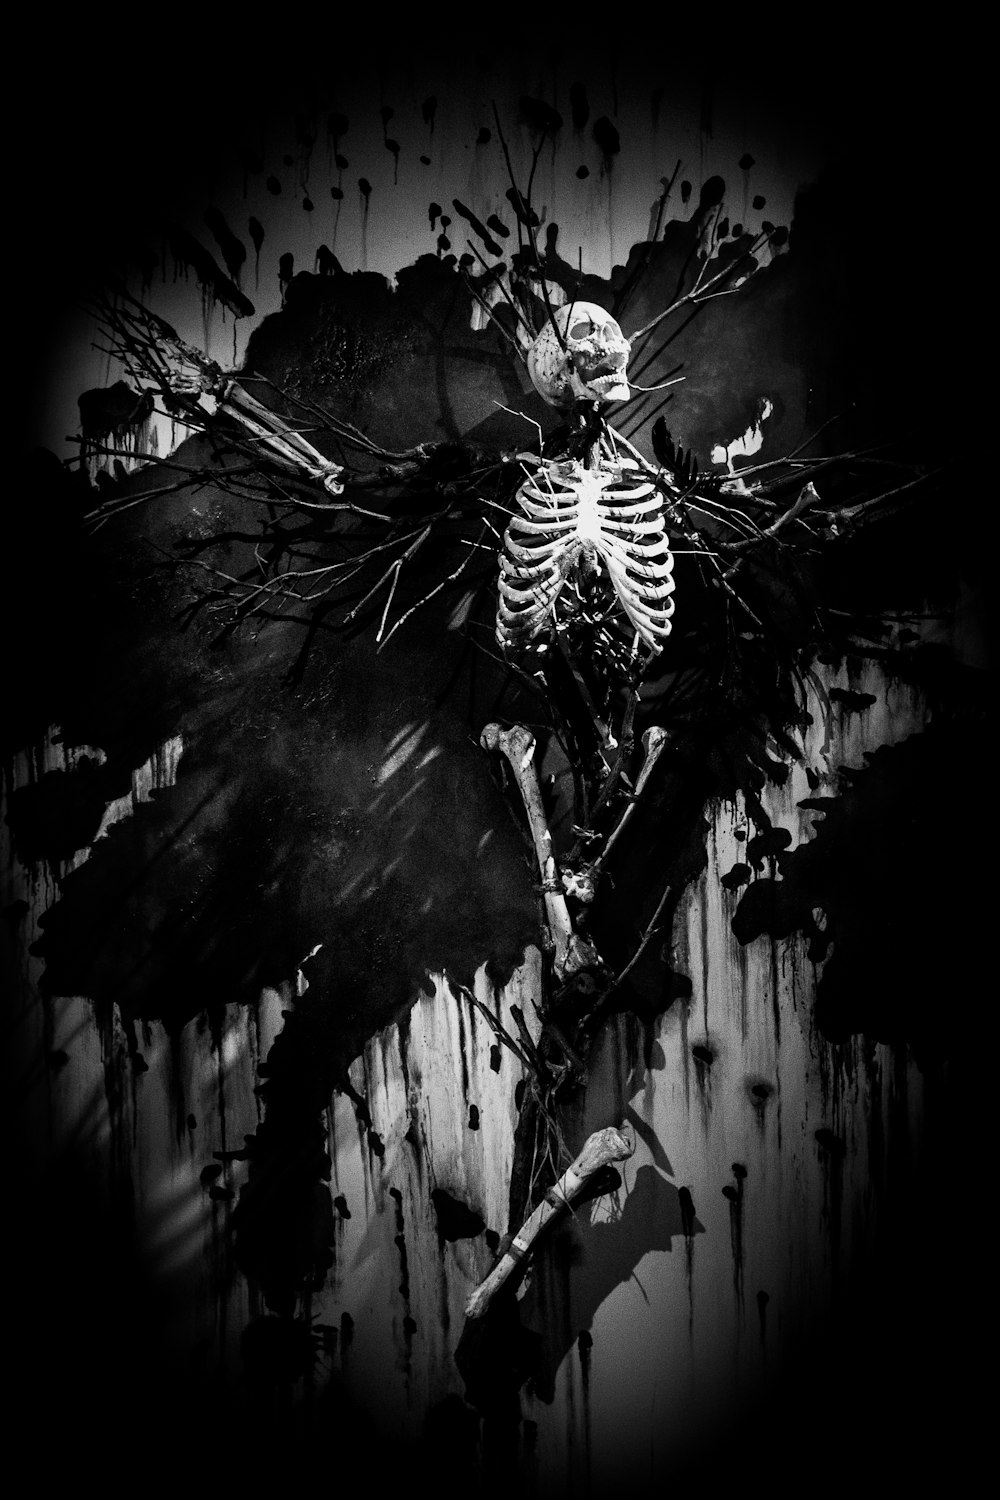 Une photo en noir et blanc d’un squelette sur une planche à roulettes